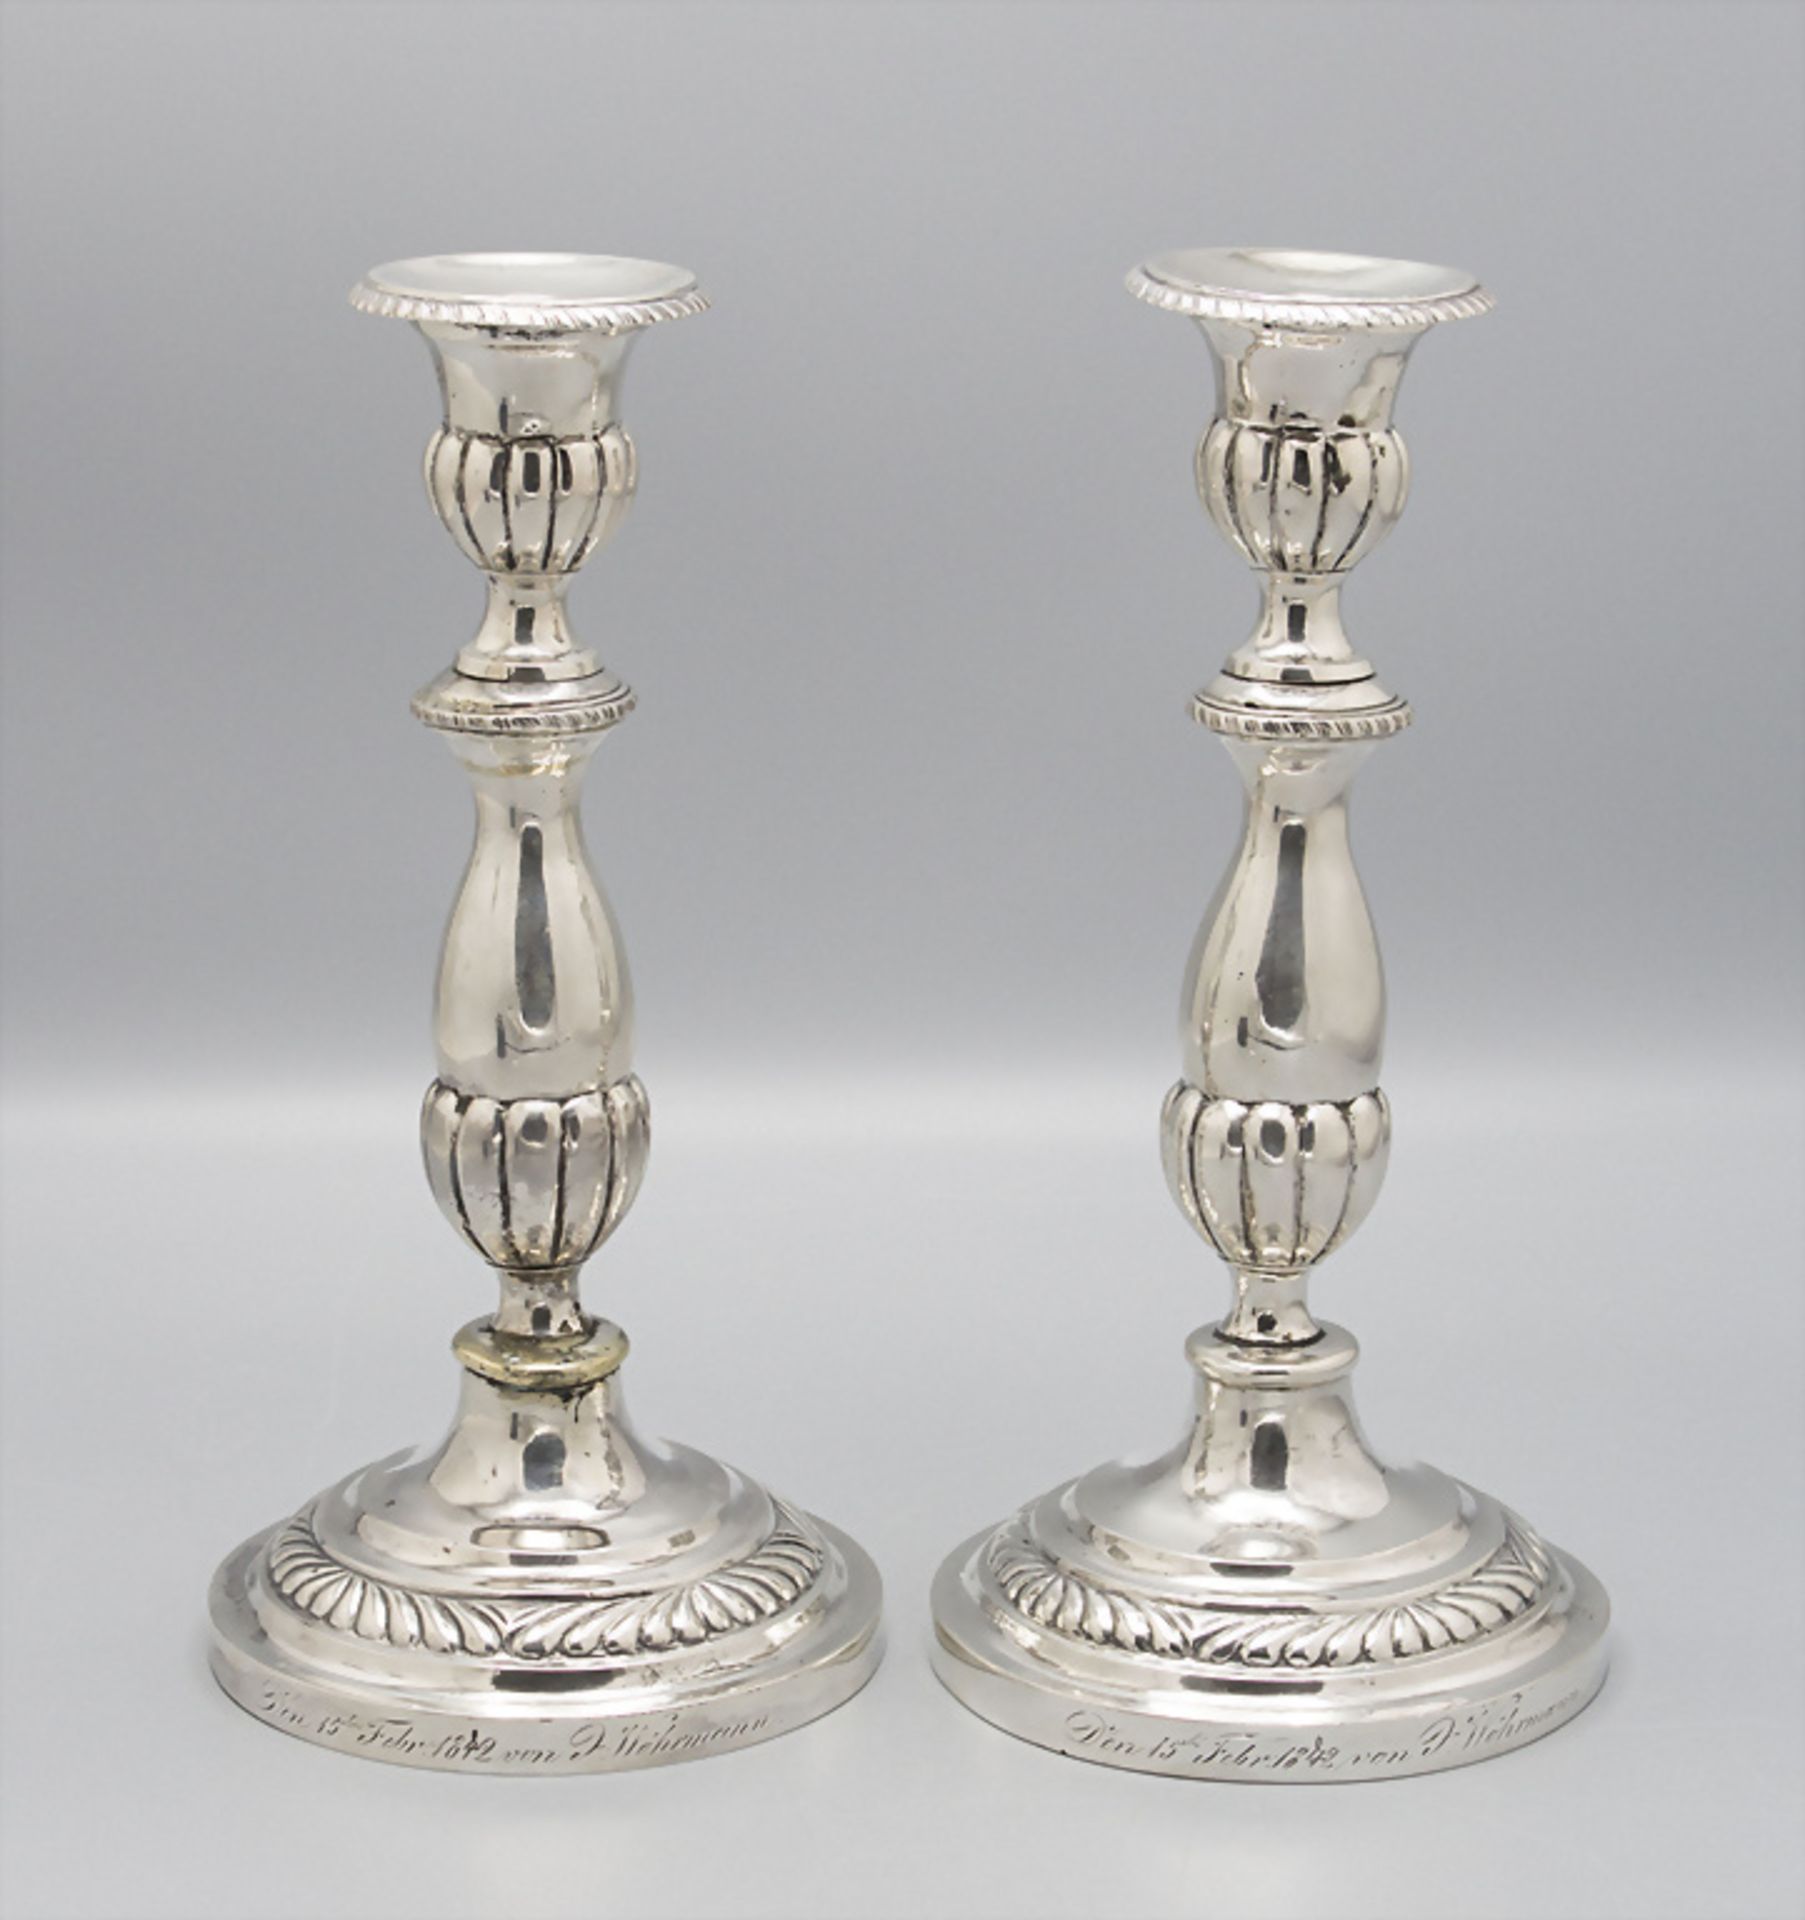 Paar Silber Kerzenleuchter / A pair of silver candlesticks, Moskau/Moscow, 1853